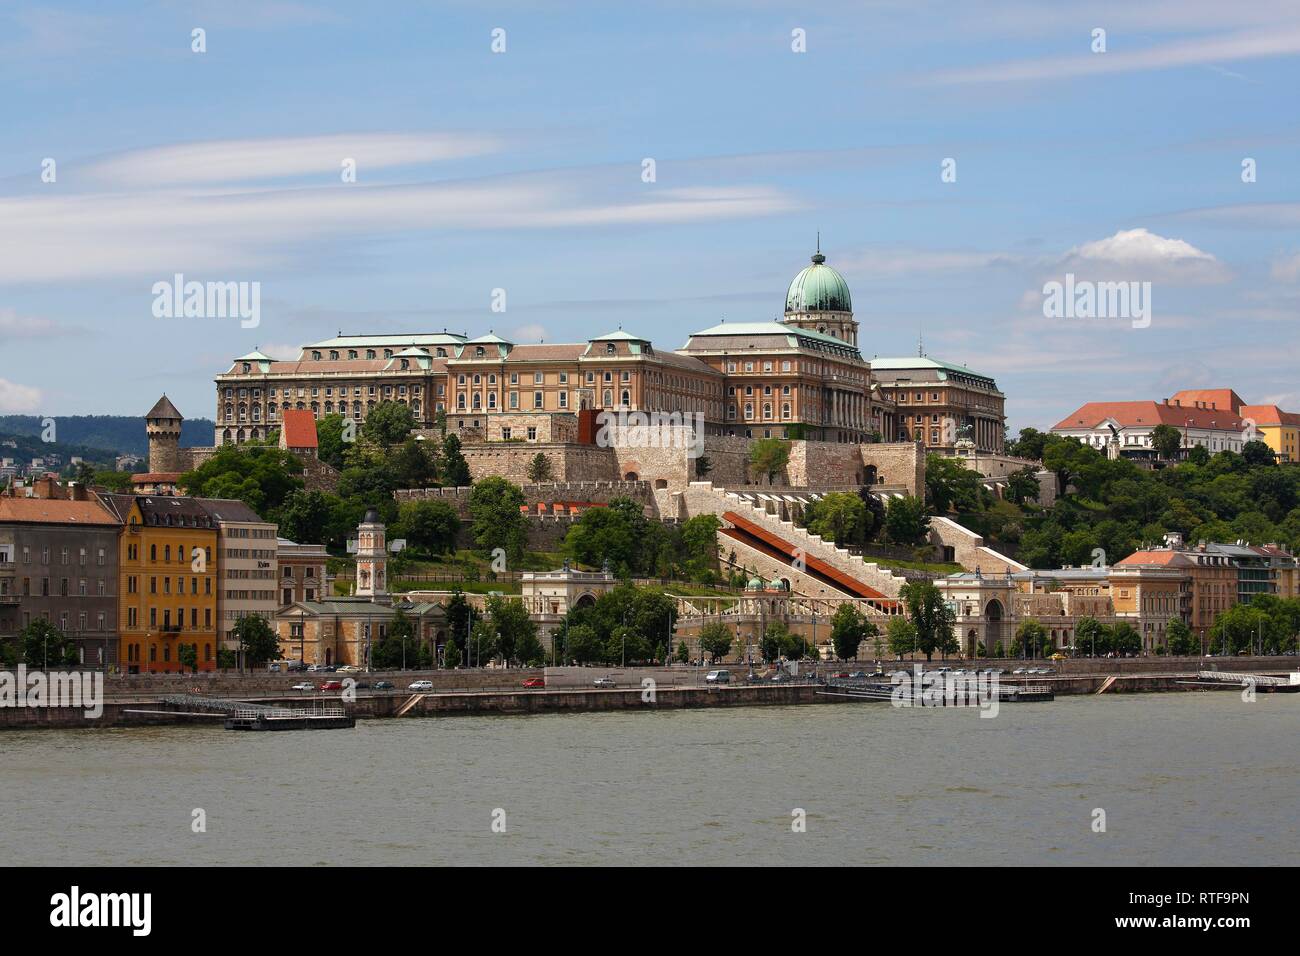 Palacio Castillo en el Danubio, el distrito del Castillo de Buda, en Budapest, Hungría Foto de stock